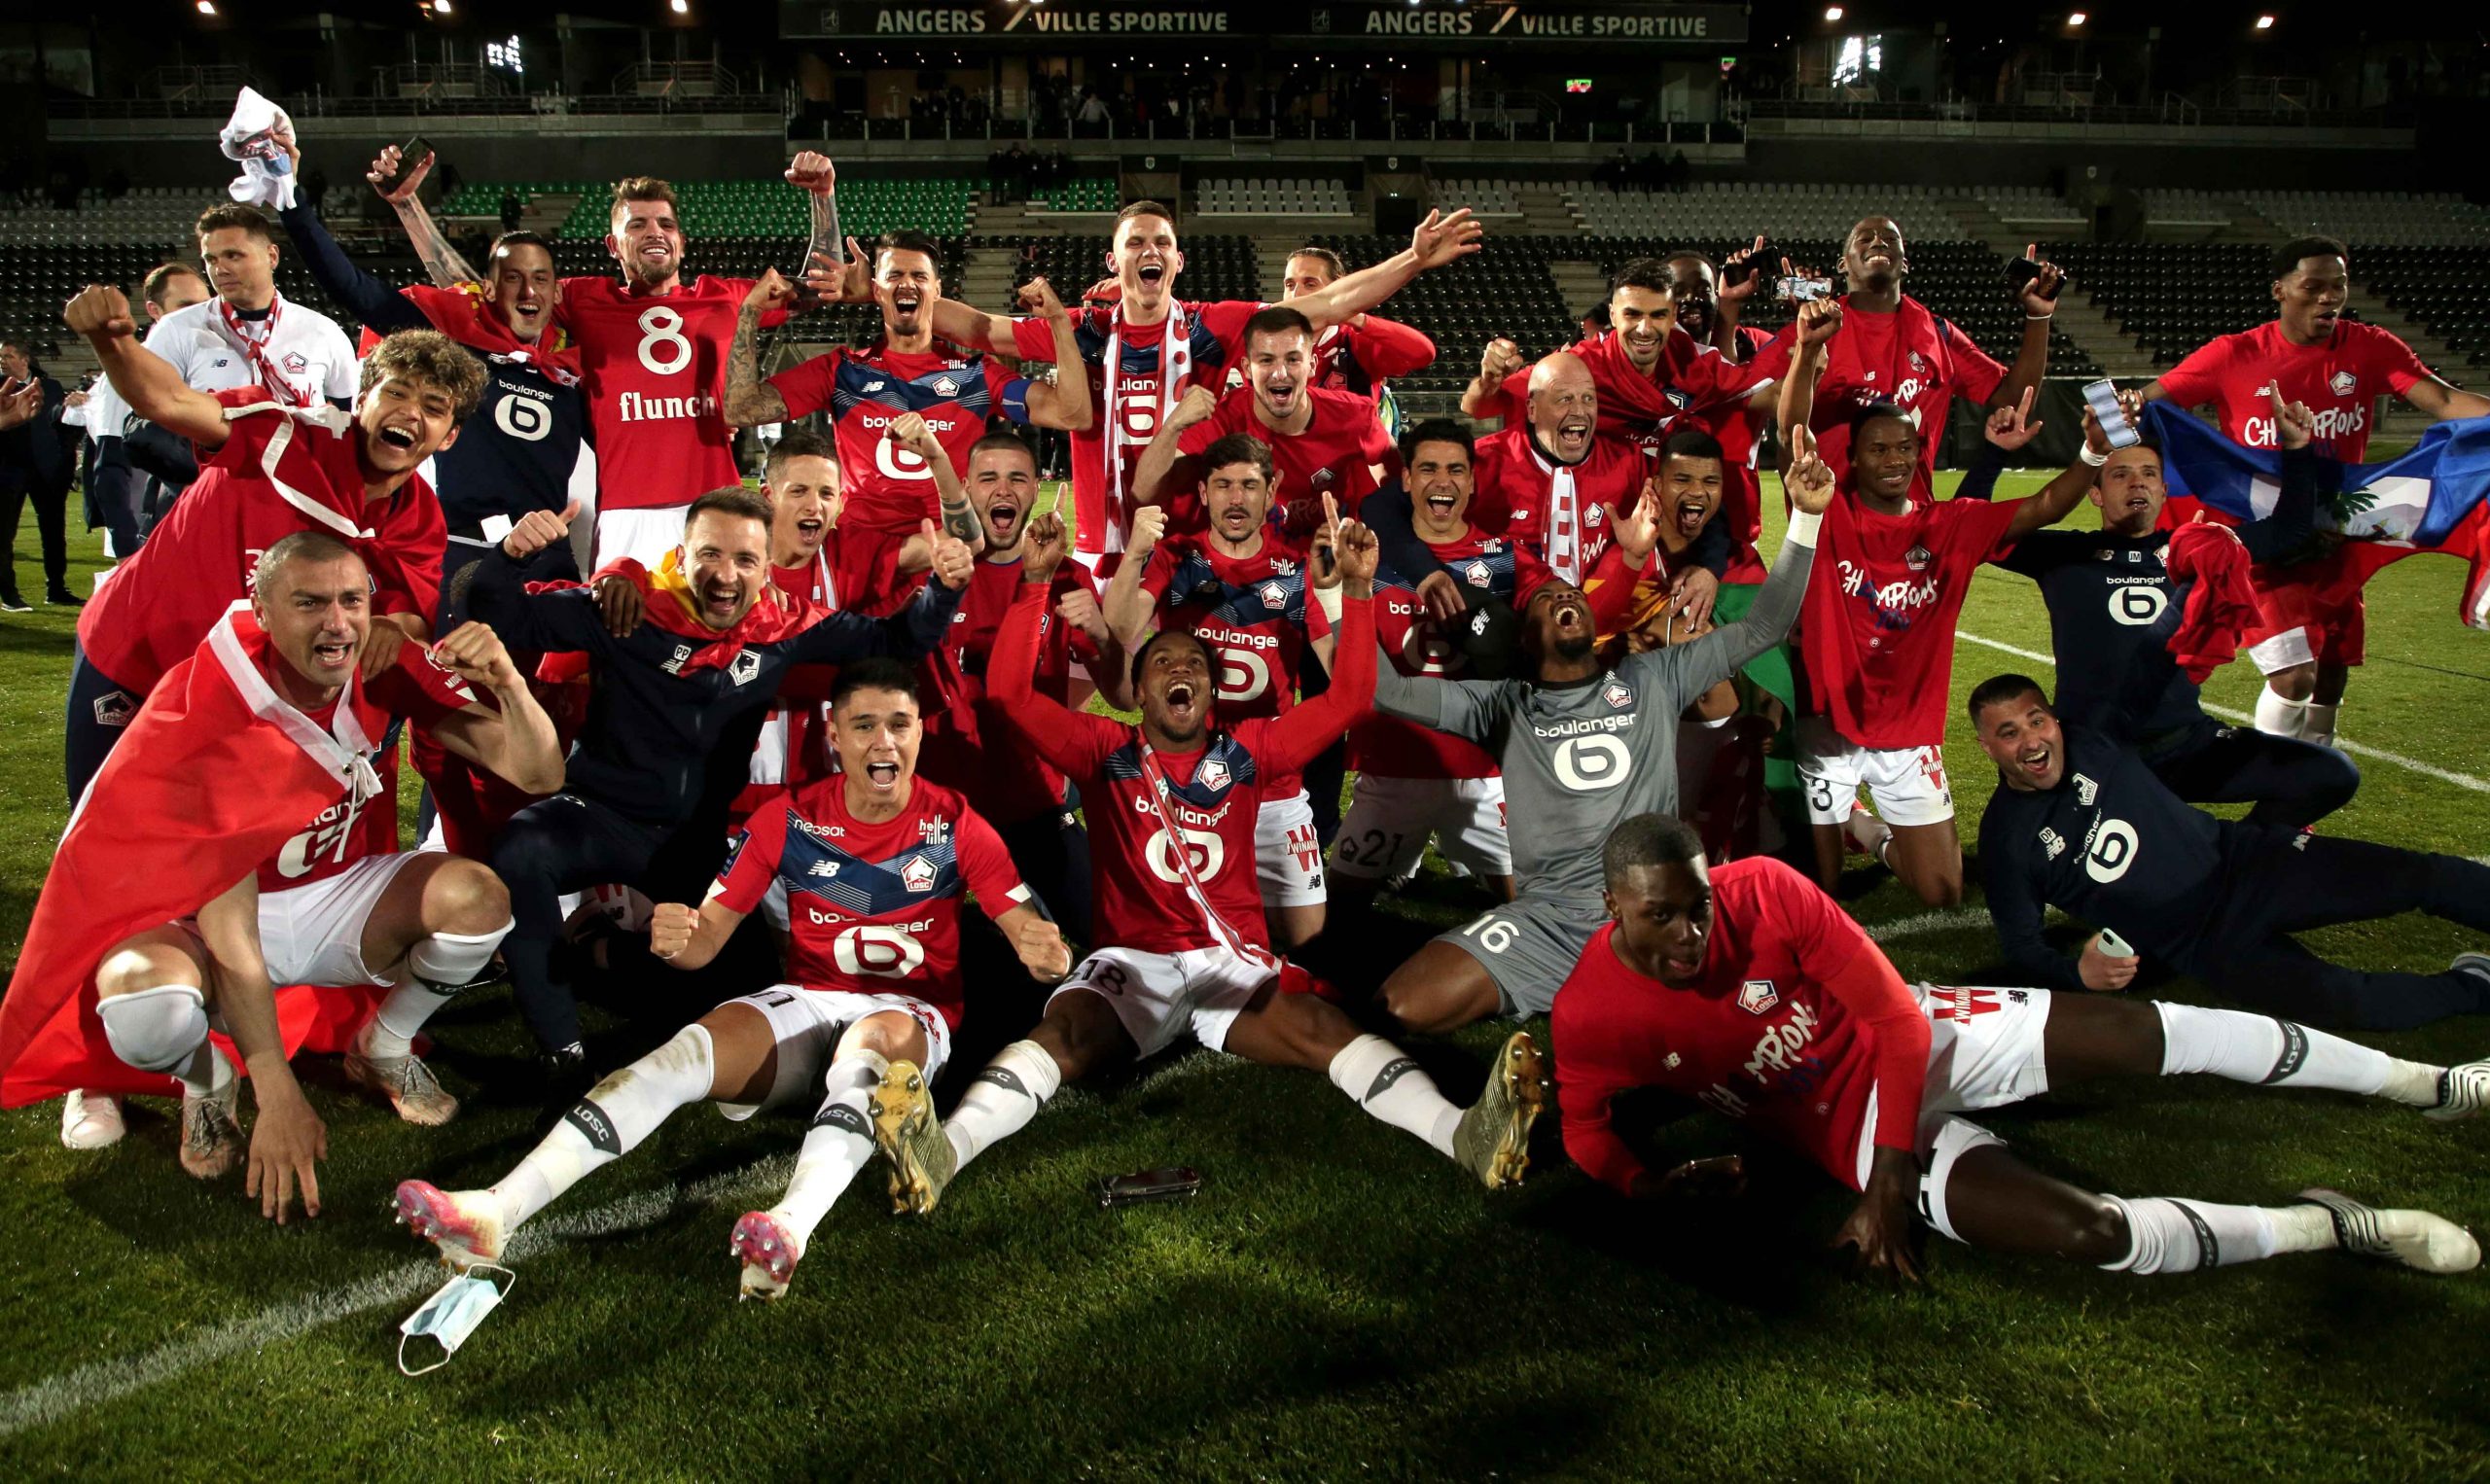 Los jugadores del Lille OSC celebran ganar el partido de fútbol de la Ligue 1 francesa entre Angers SCO y Lille OSC y llevarse el título de campeón de la Ligue 1, en Angers, Francia, el 23 de mayo de 2021. (Francia) EFE